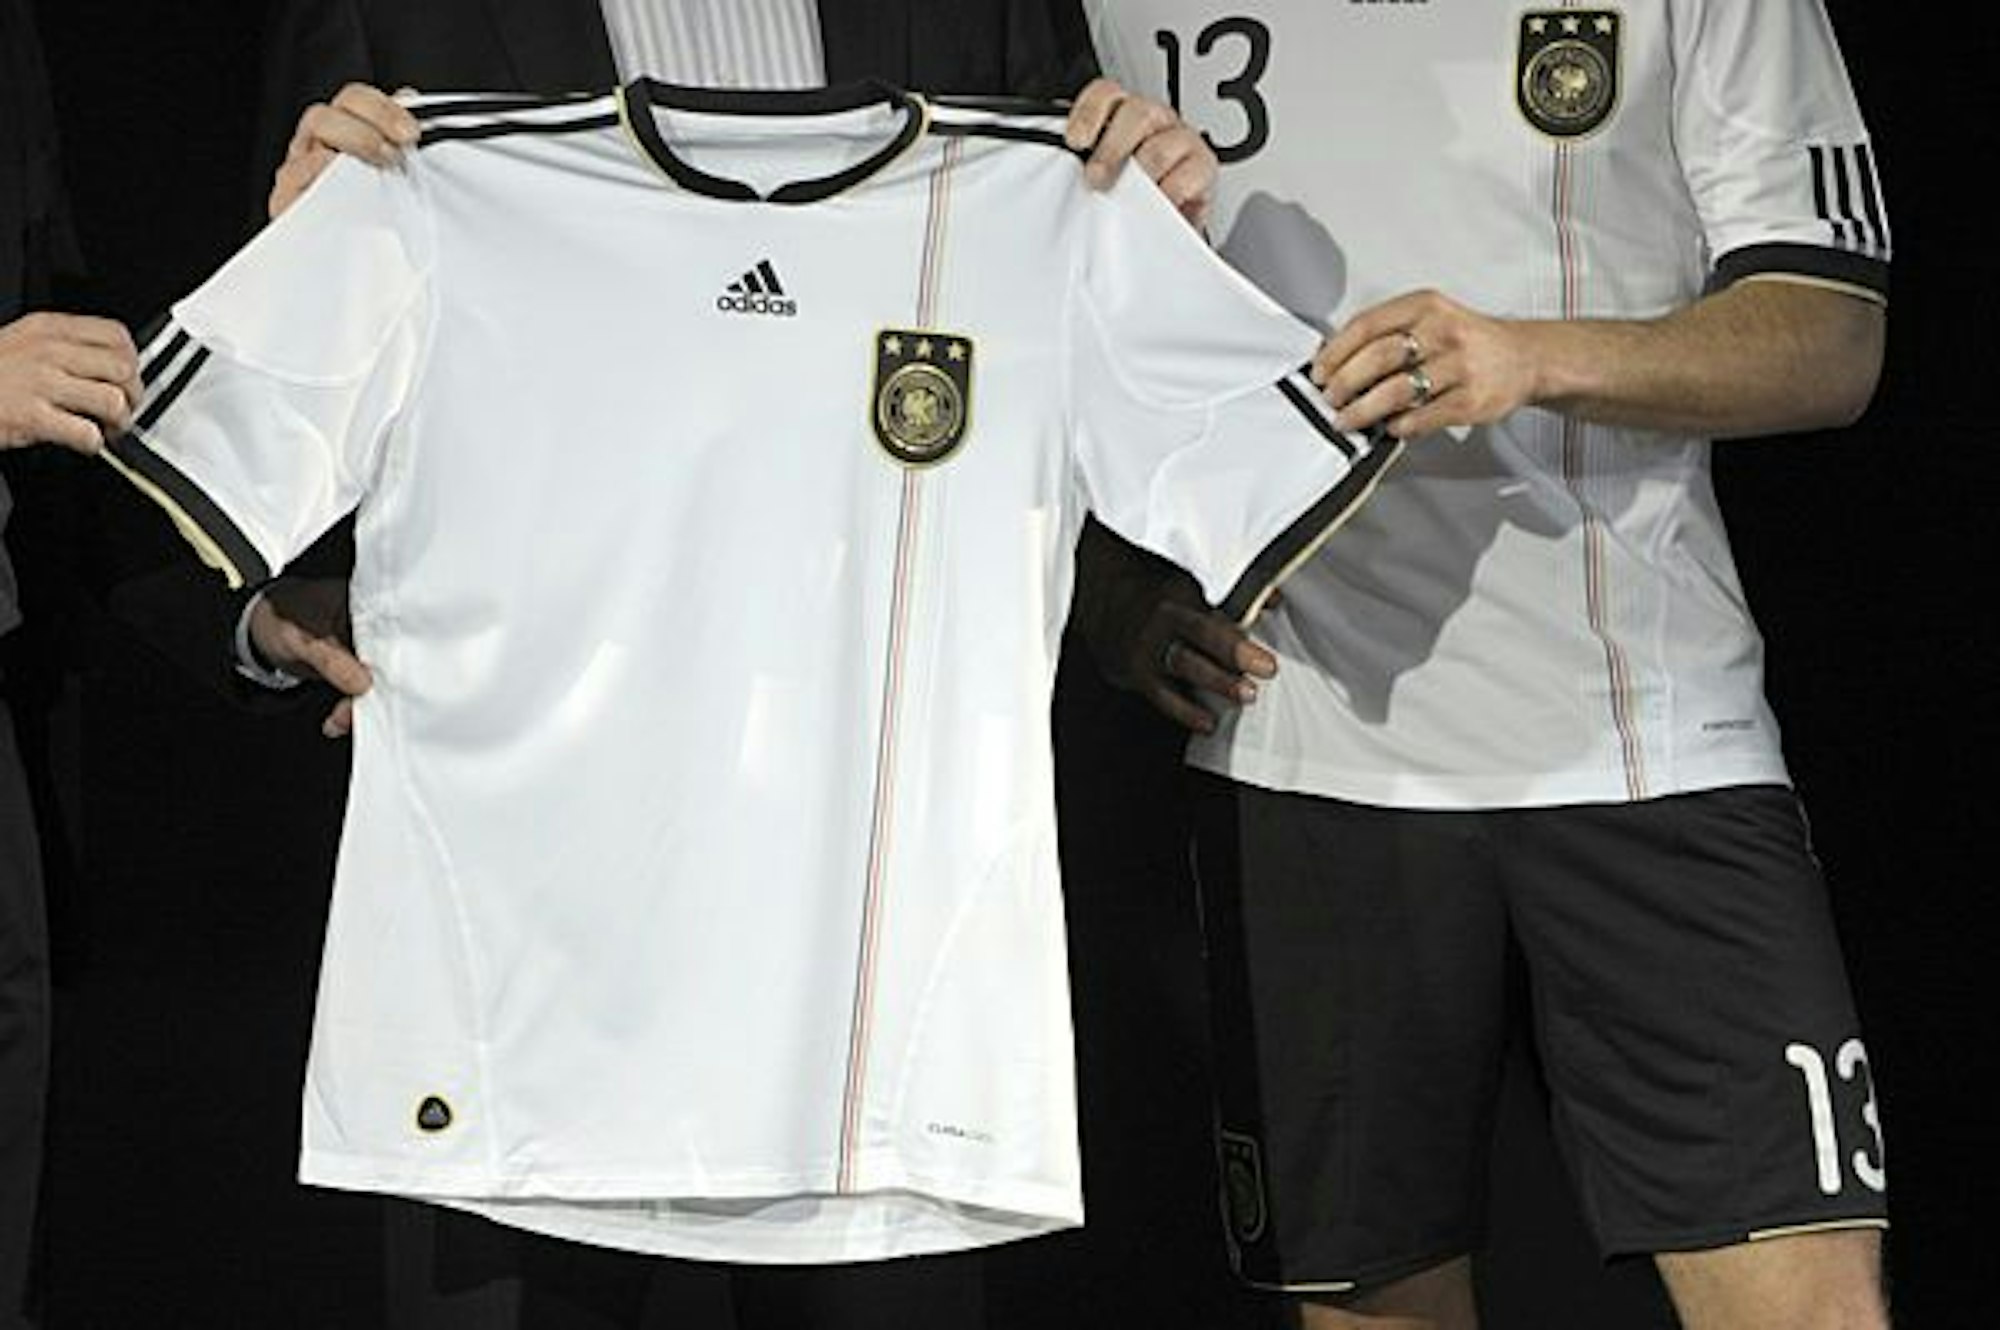 Das neue Deutschland-Trikot für die WM 2010 wird präsentiert.